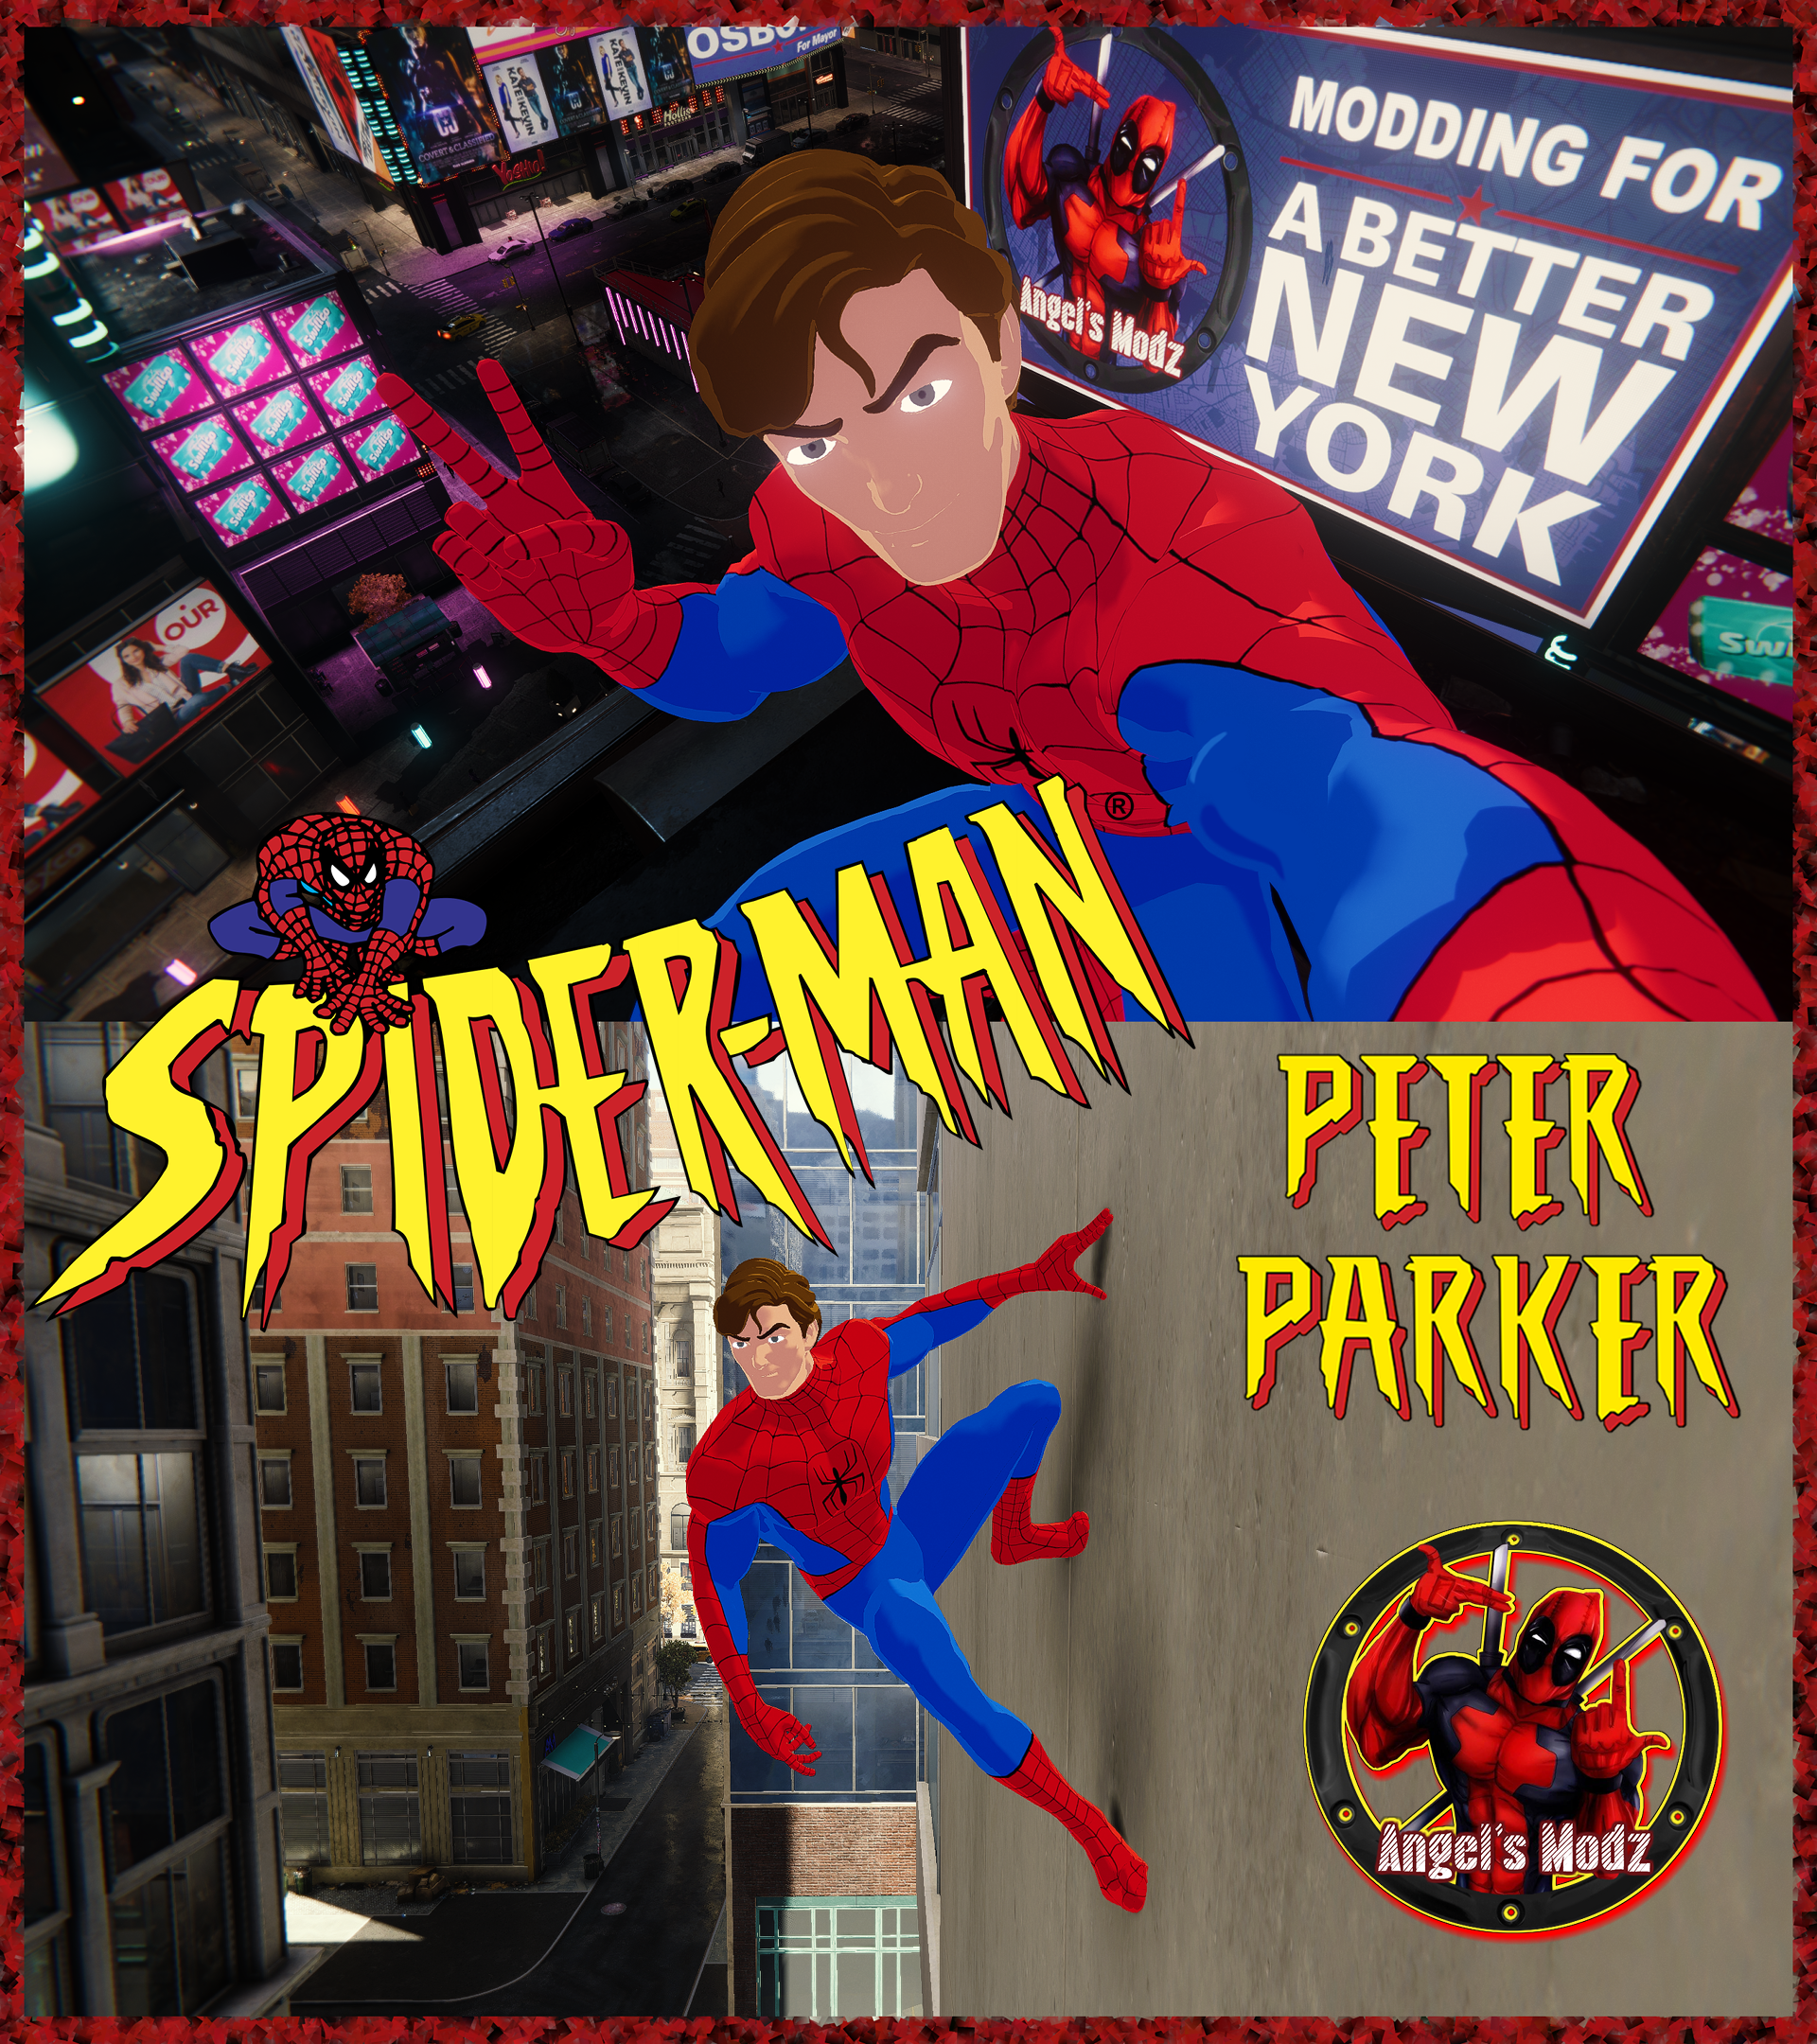 90's Spider-Man [Spider-Man Remastered Mod] by AngelsModz on DeviantArt